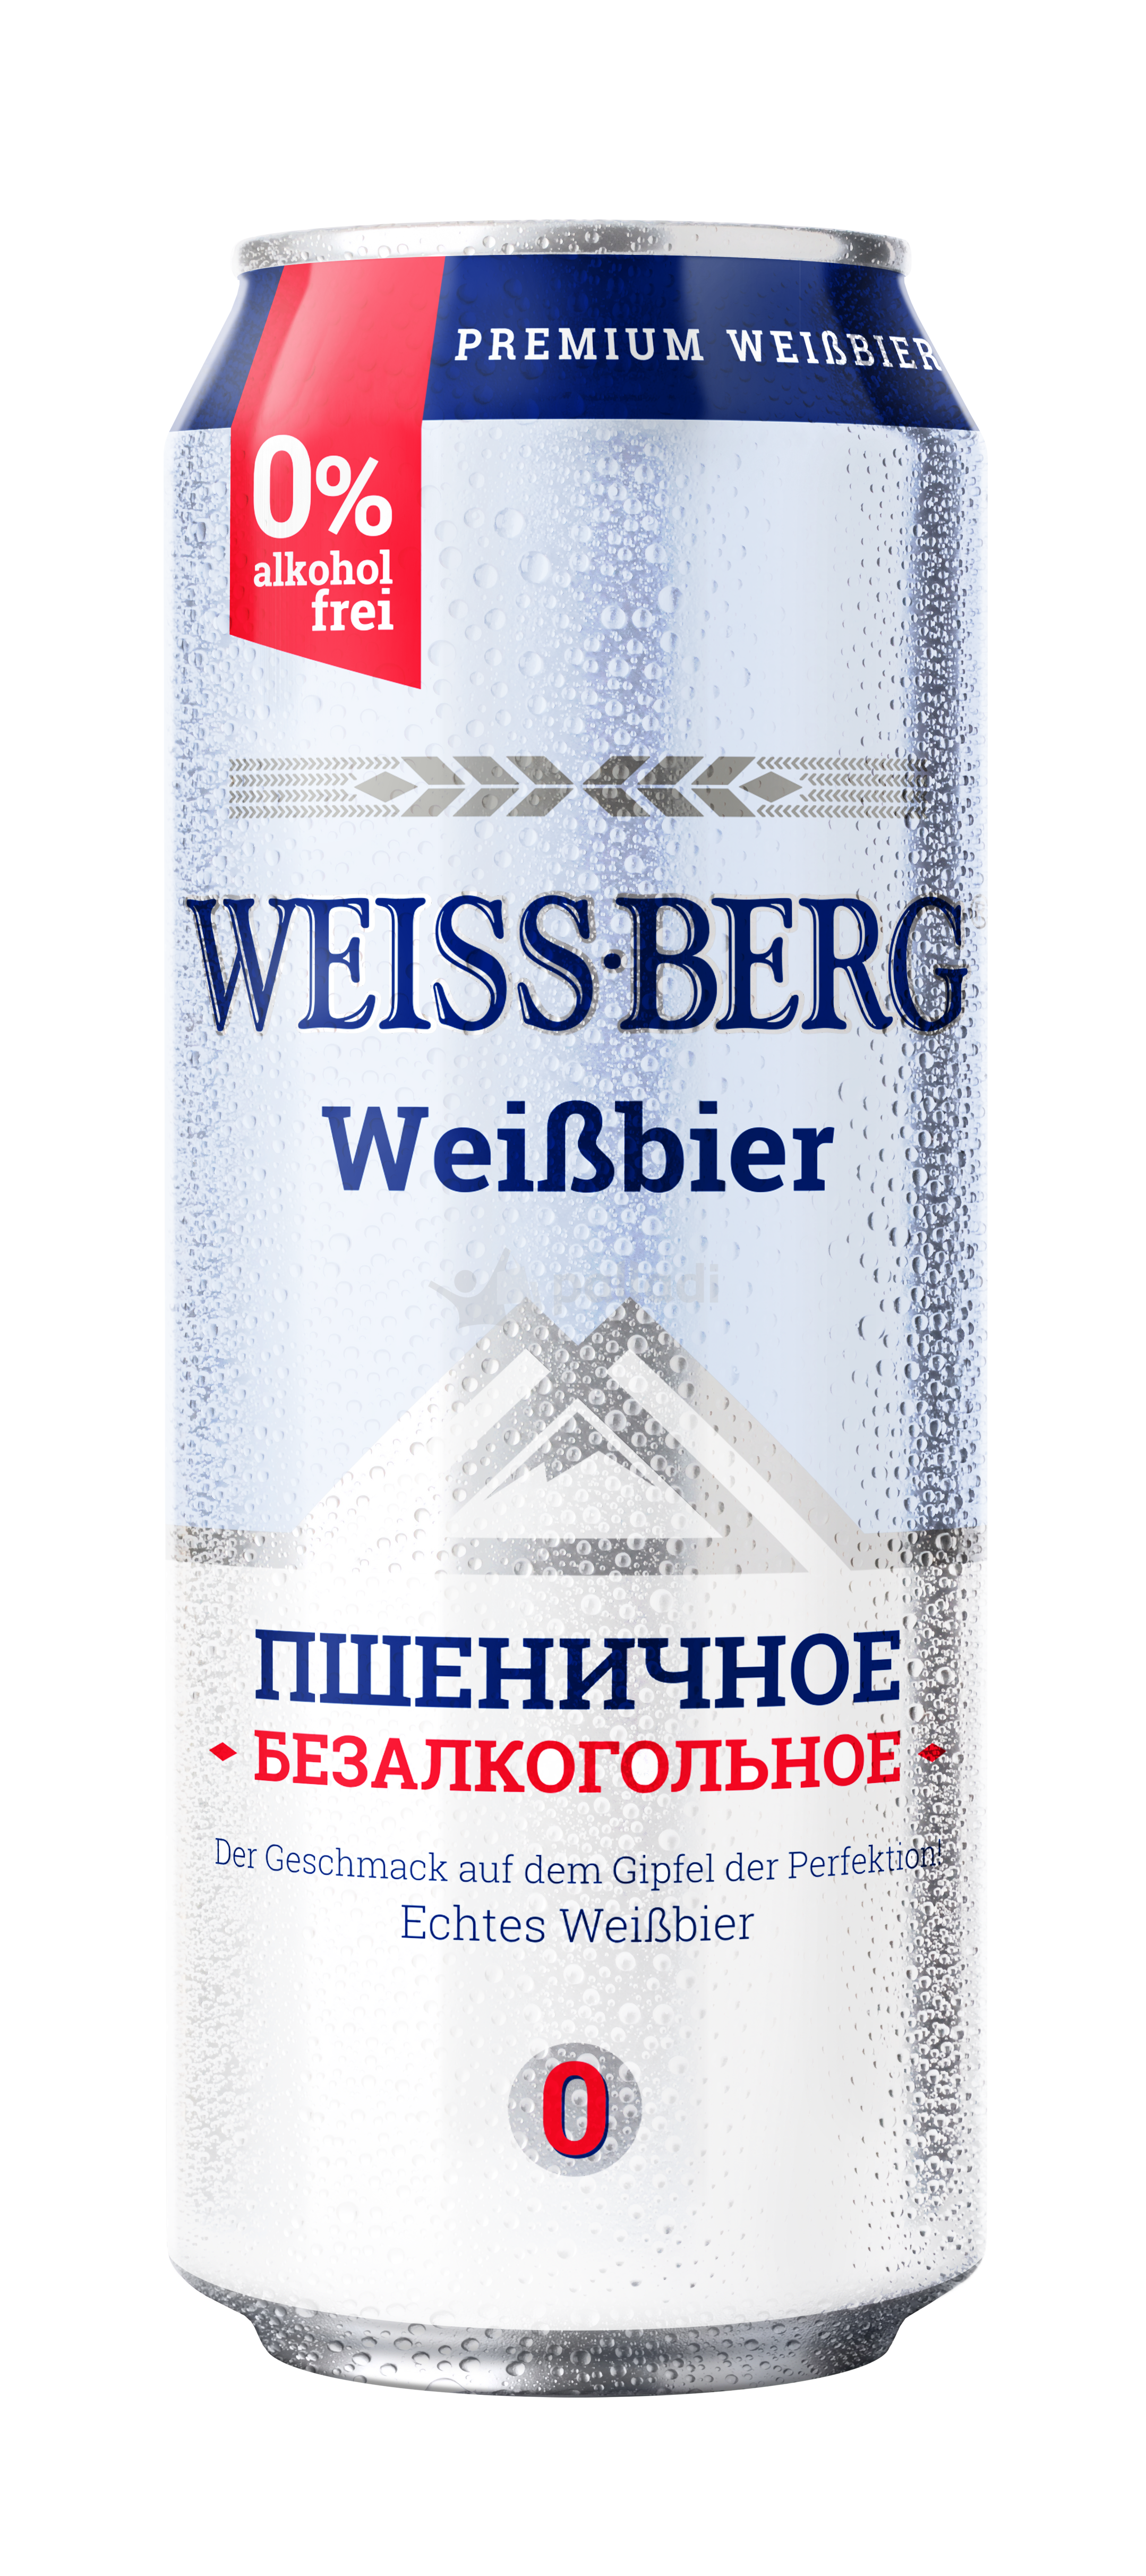 Пшеничное безалкогольное пиво. Пиво Вайсберг пшеничное. Безалкогольное пиво нефильтрованное Вайсберг. Weissberg безалкогольное пшеничное. Пиво Weiss-Berg Вайсберг, 0,44 л.